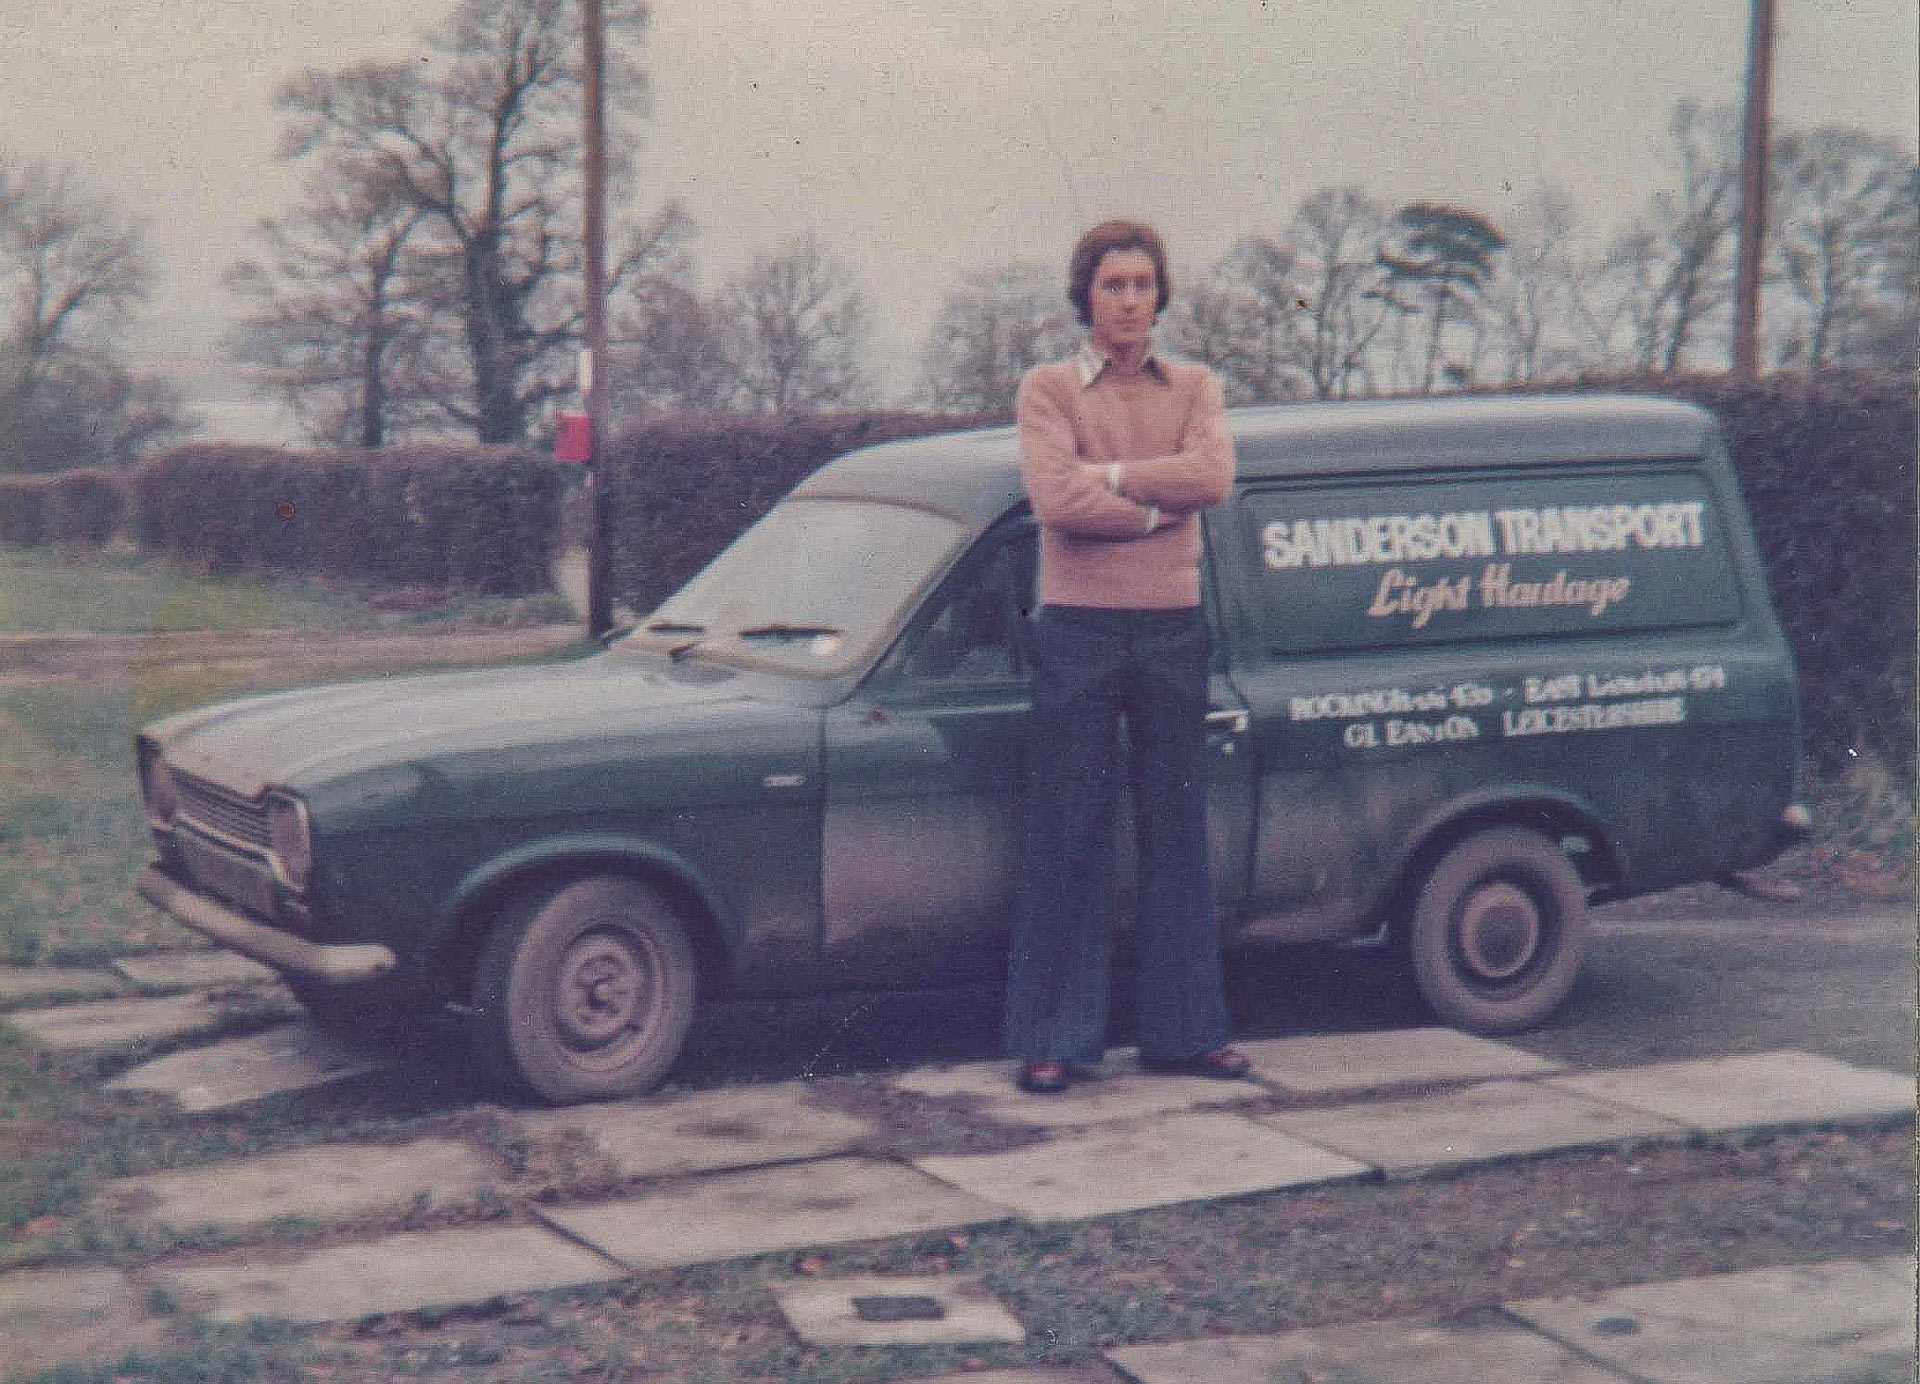 Stephen Sanderson standing by a van - vintage